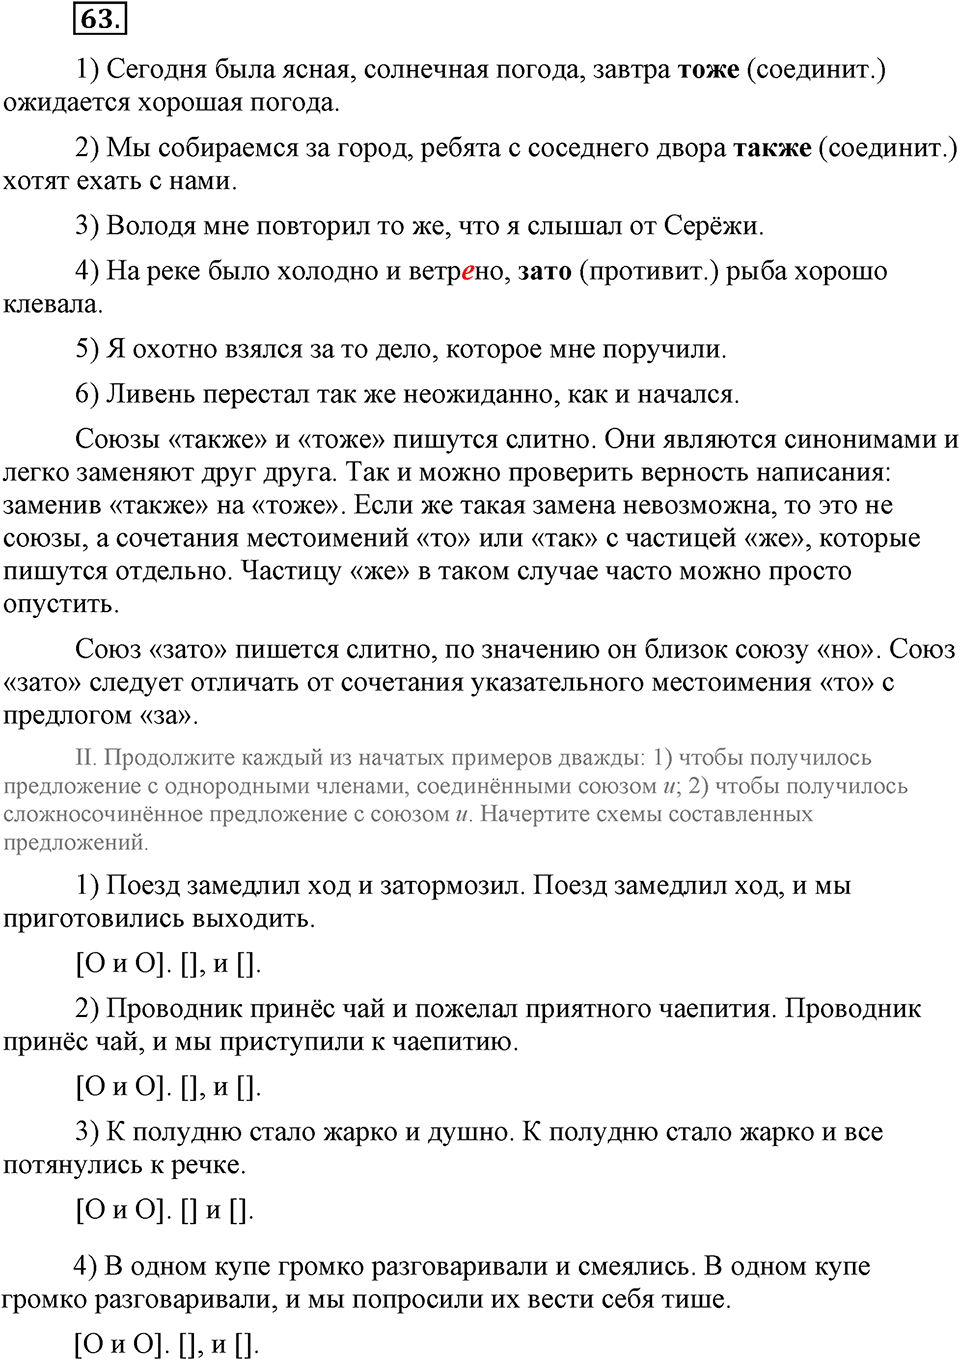 упражнение №63 русский язык 9 класс Бархударов